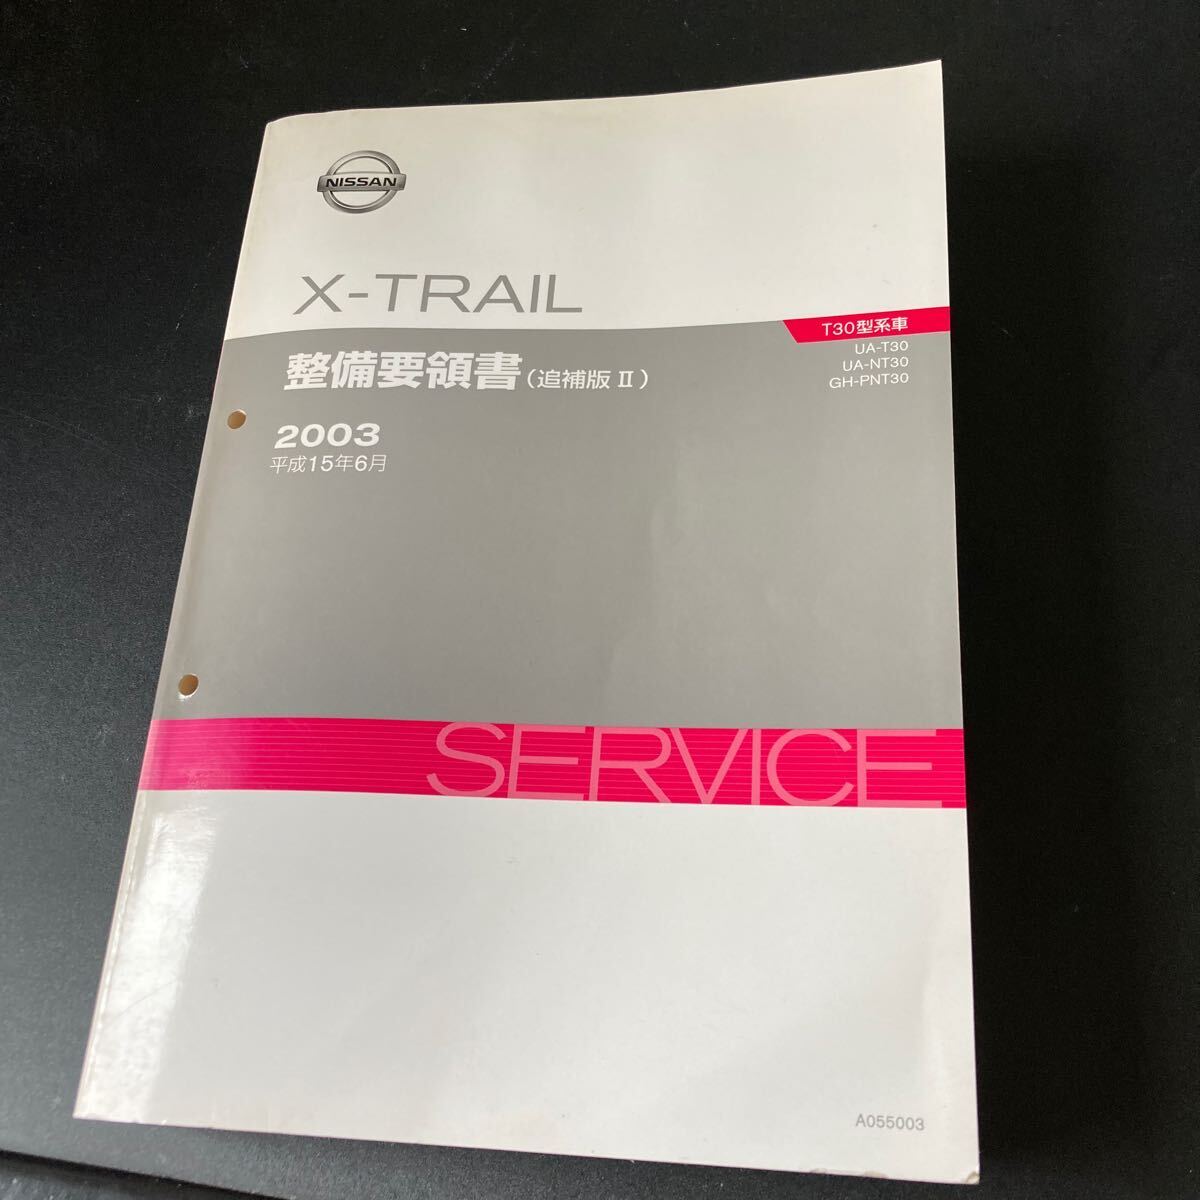  Nissan T30 X-TRAIL X-trail maintenance point paper supplement version Ⅱ 1 pcs. service manual repair book service book QR20DE SR20VET A055003